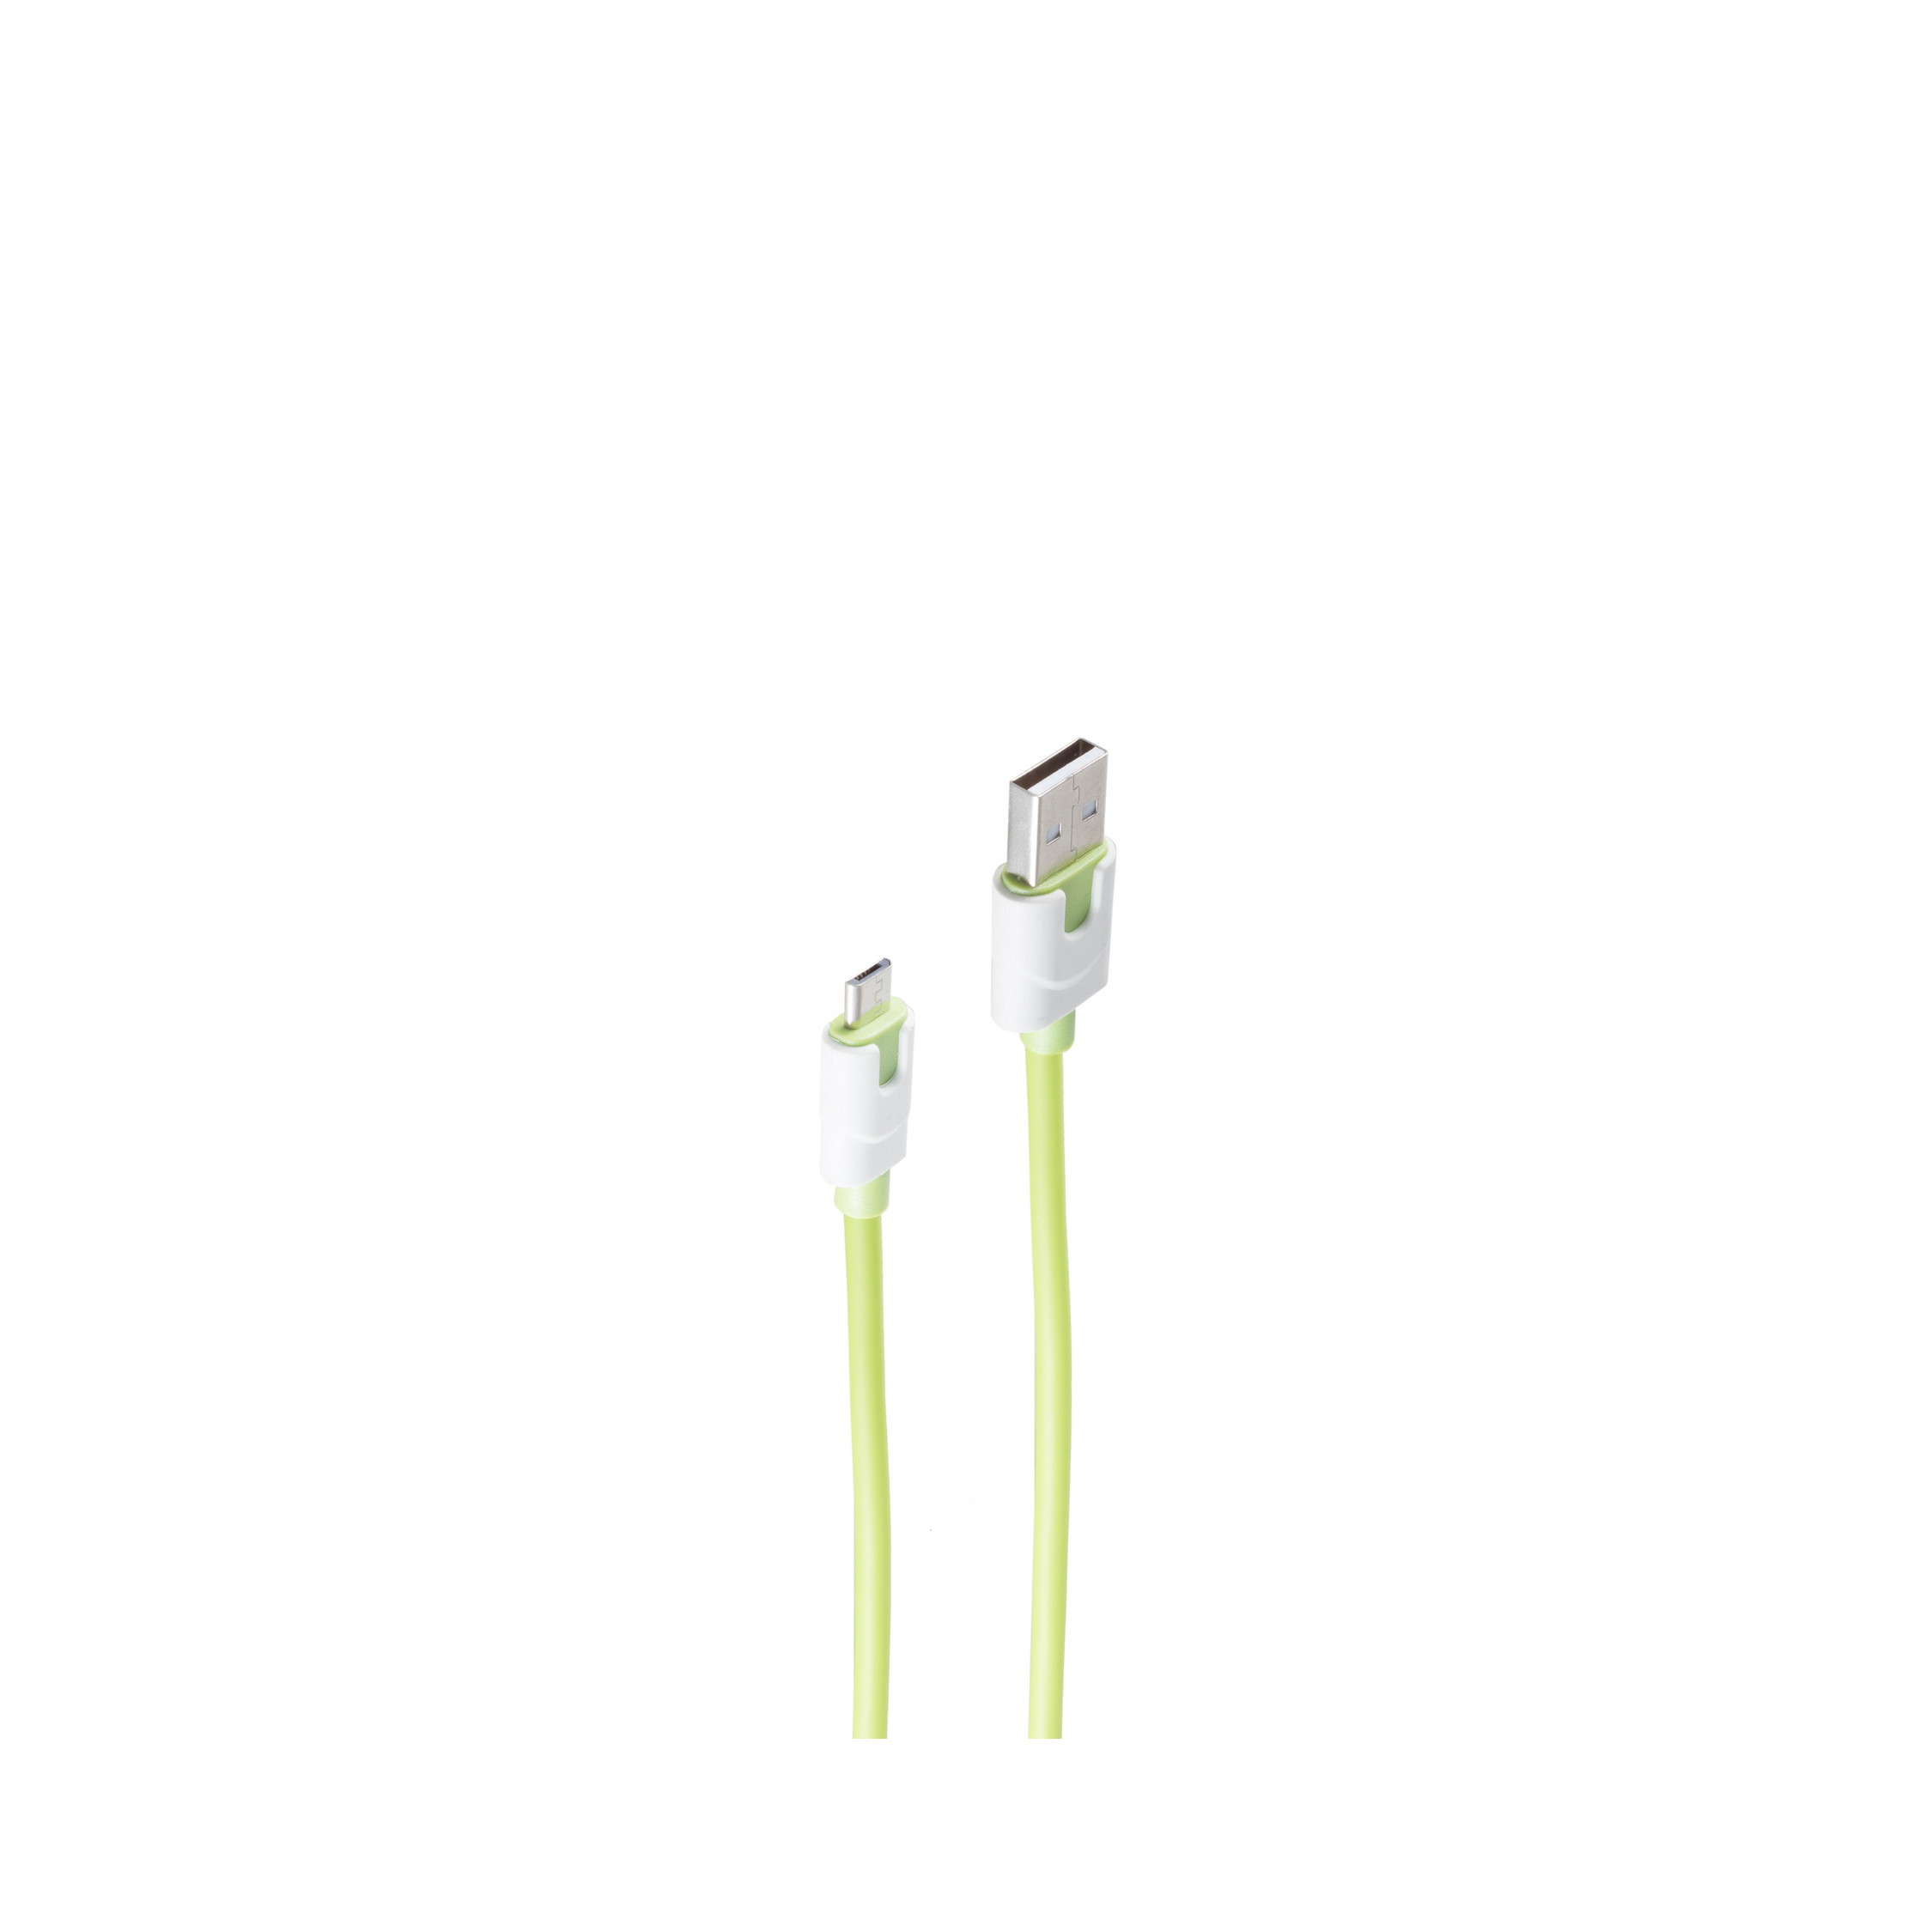 Micro auf Ladekabel, grün grün USB-Ladekabel 0,9m, Stecker A USB SHIVERPEAKS m, 0,9 B, USB